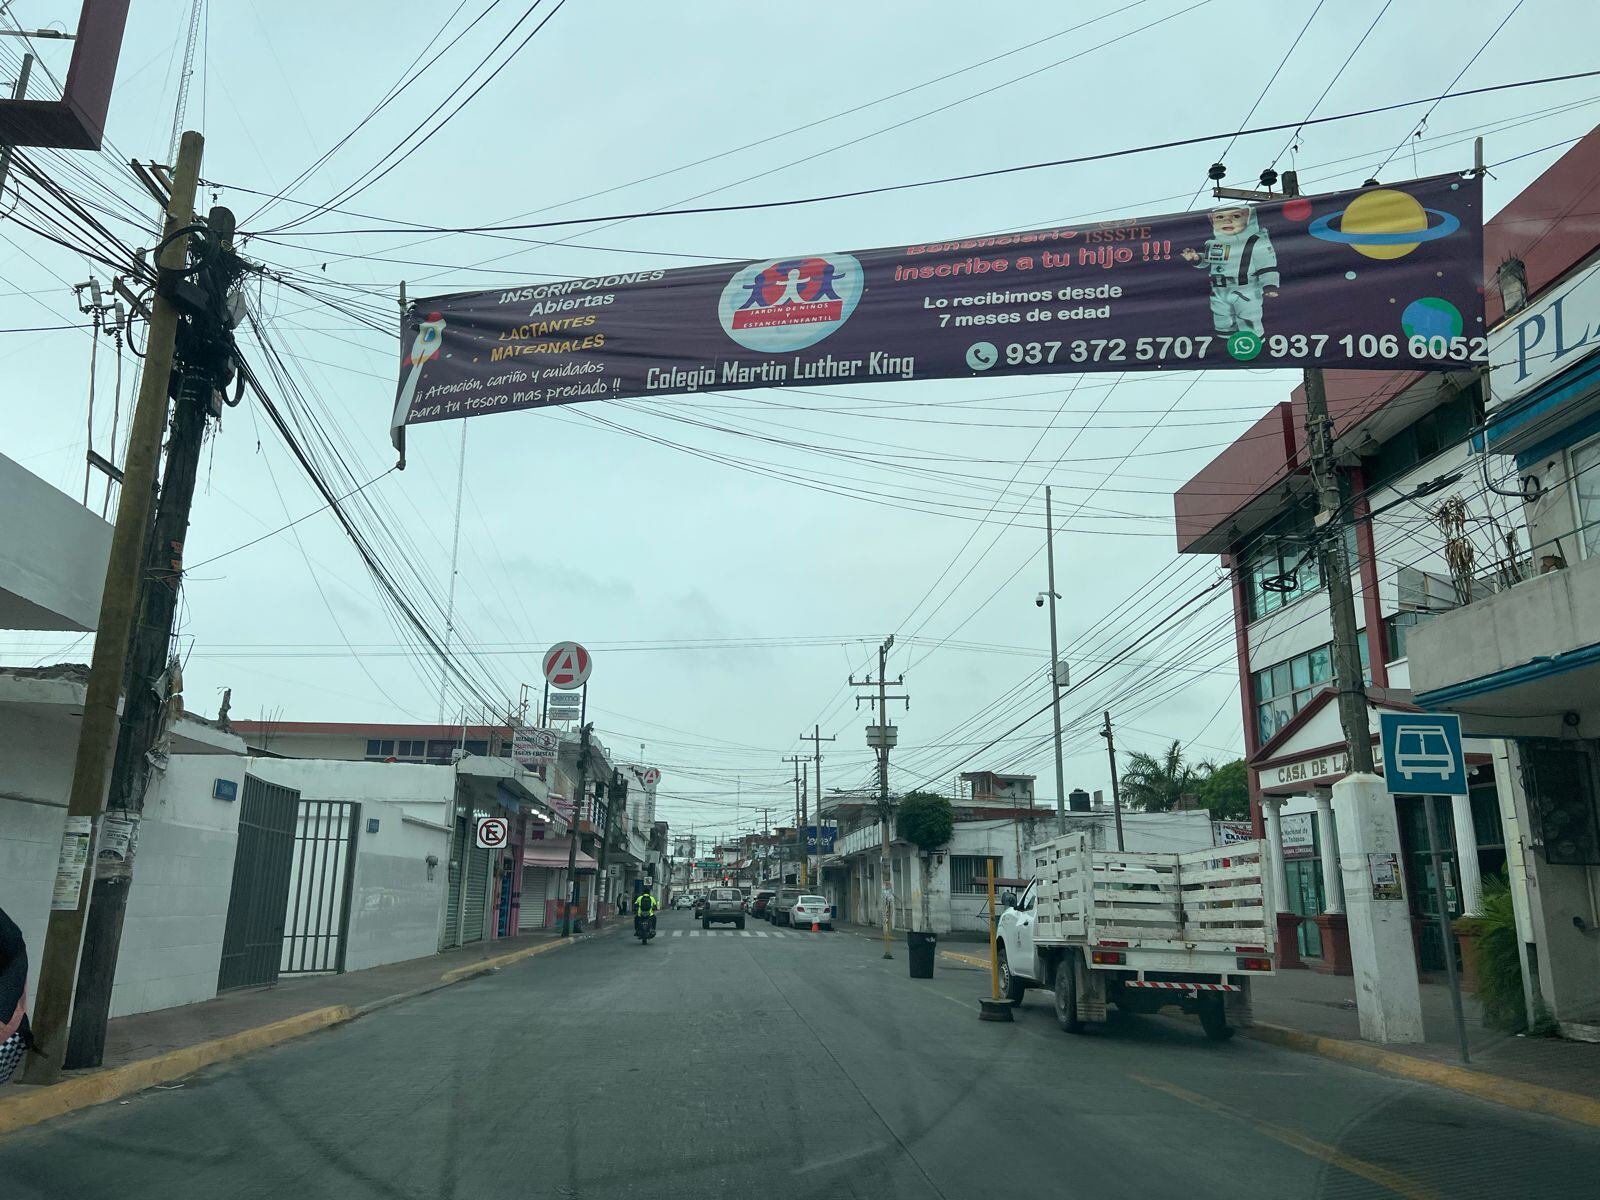 Violencia en Tabasco: Narcobloqueos en Cárdenas dejan 4 muertos y 2 detenidos